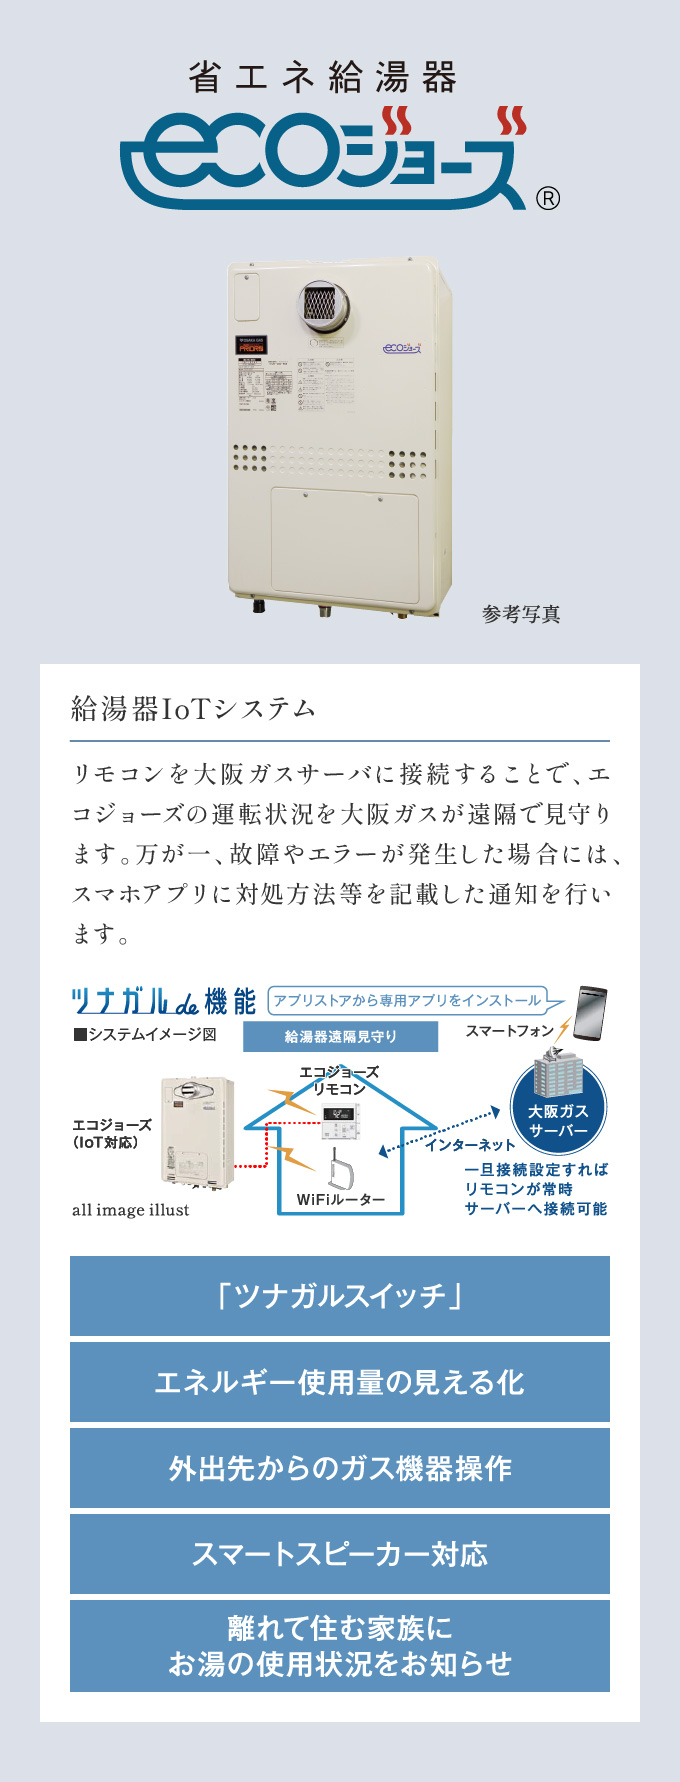 給湯器IoTシステム リモコンを大阪ガスサーバに接続することで、エコジョーズの運転状況を大阪ガスが遠隔で見守ります。万が一、故障やエラーが発生した場合には、スマホアプリに対処方法等を記載した通知を行います。